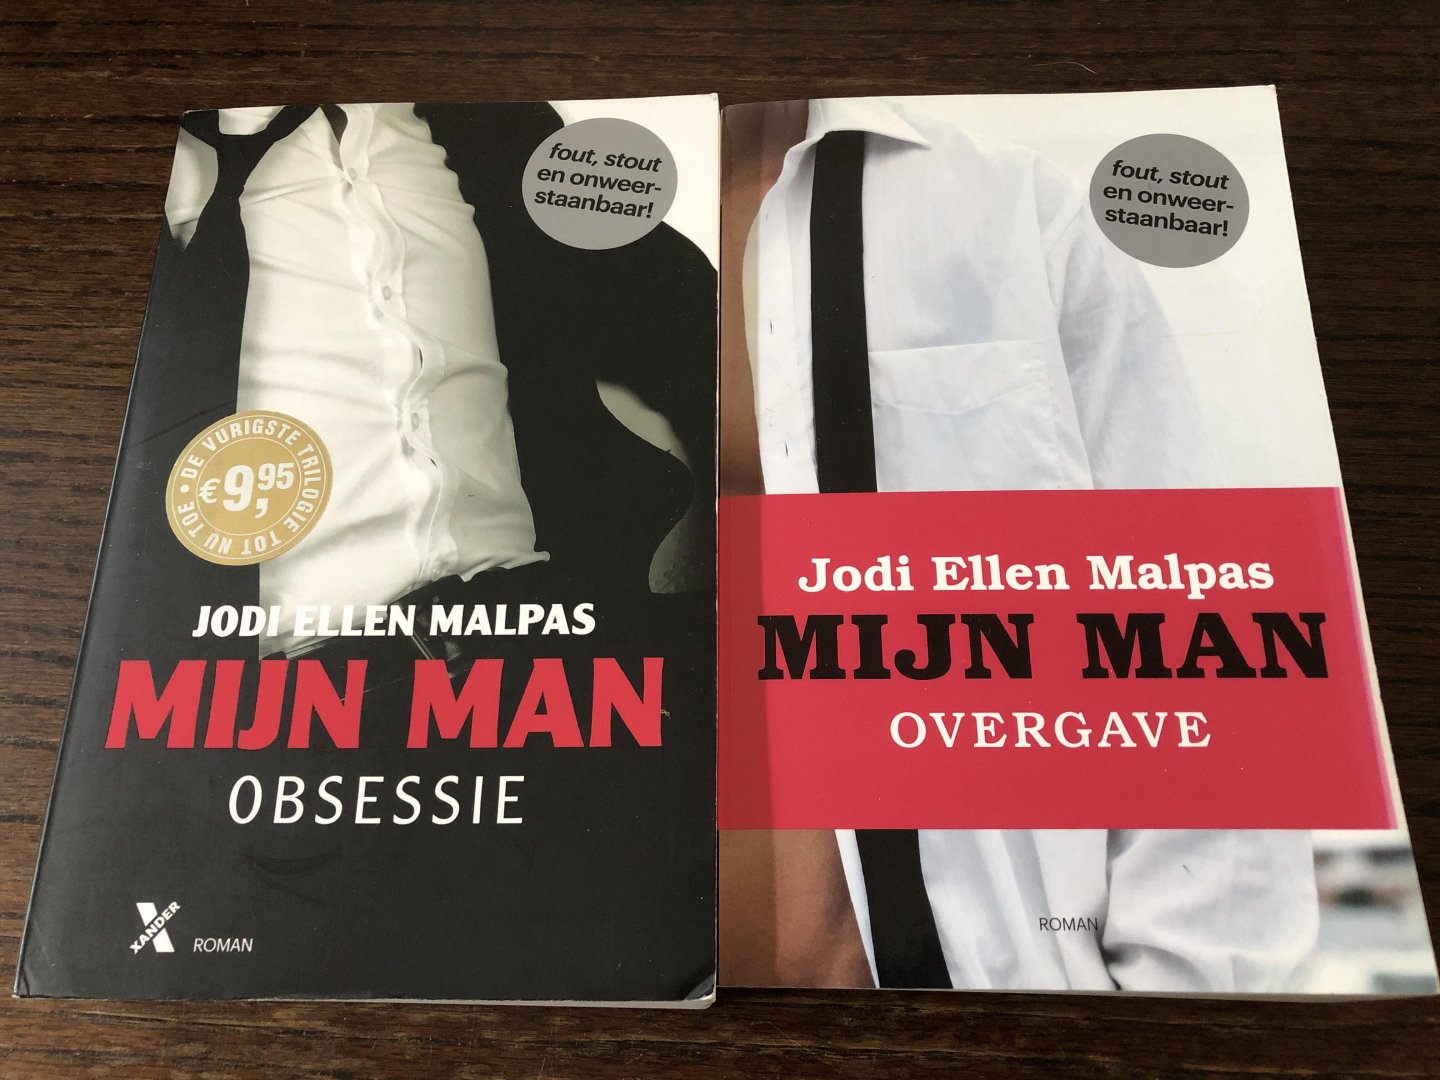 Malpas, Jodi Ellen - Twee delen van: Mijn mijn; Obsessie & Overgave